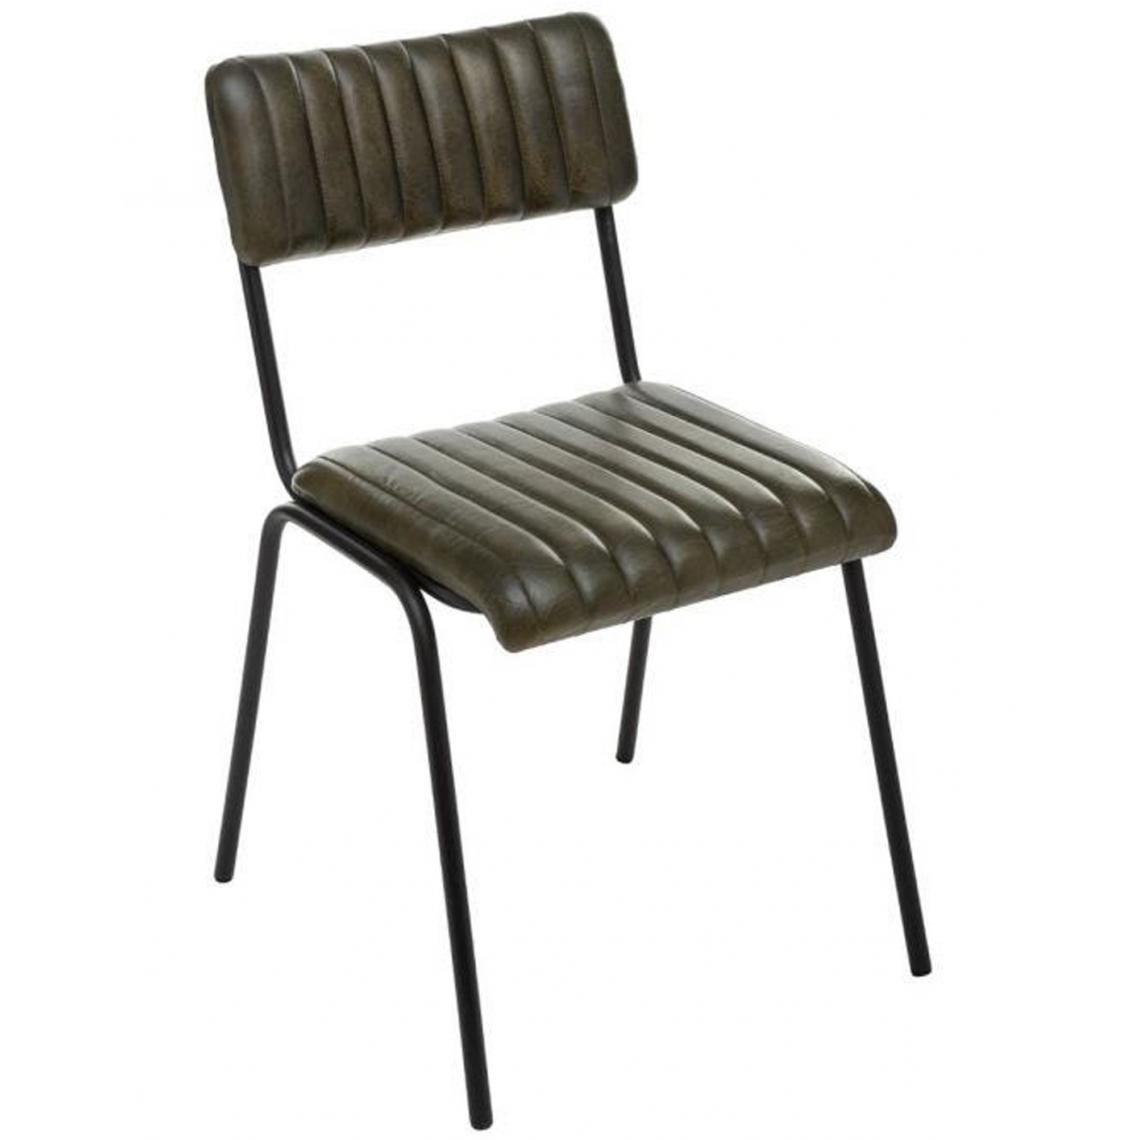 Pegane - Lot de 4 chaises coloris vert kaki en cuir / fer - Longueur 46,5 x Profondeur 51,5 x Hauteur 78 cm - Chaises